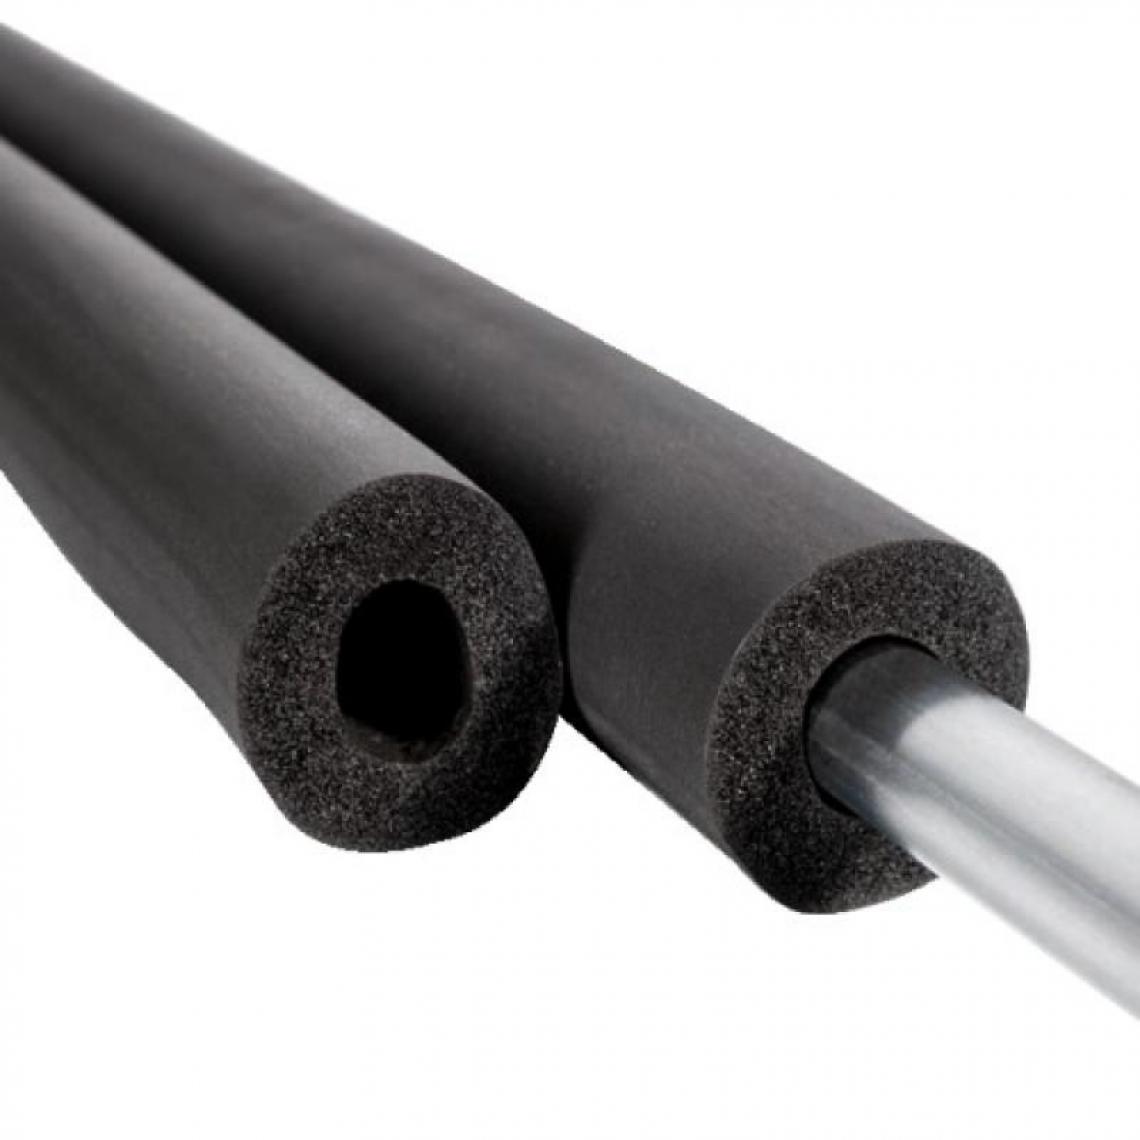 NMC - Tube isolant non fendu, épaisseur 19 mm, longueur 2 m, pour tuyaux diamètre 28 - Coudes et raccords PVC